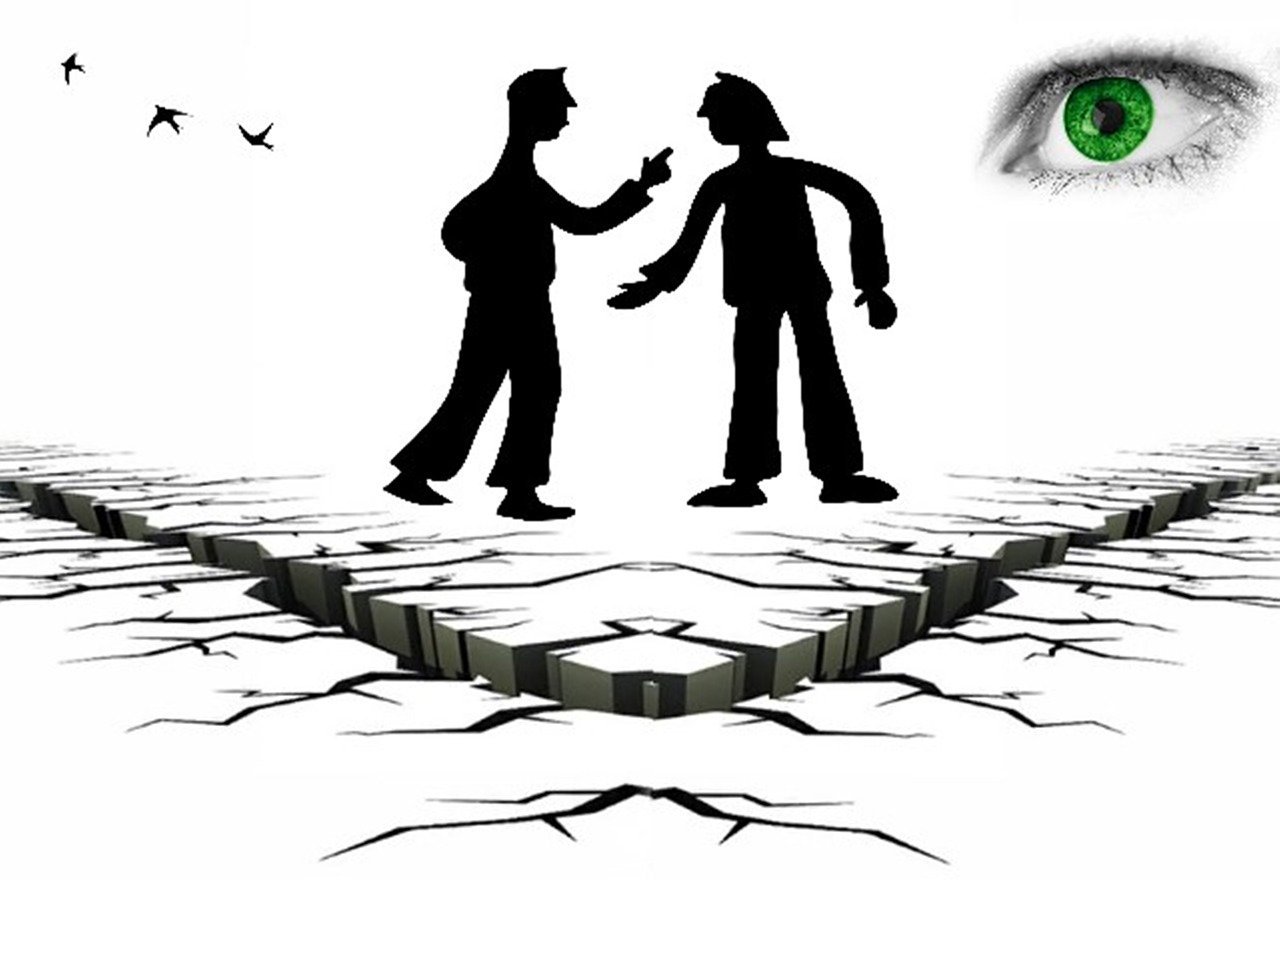 Dos personas en conflicto y un ojo superior observando. Principio de contradicción